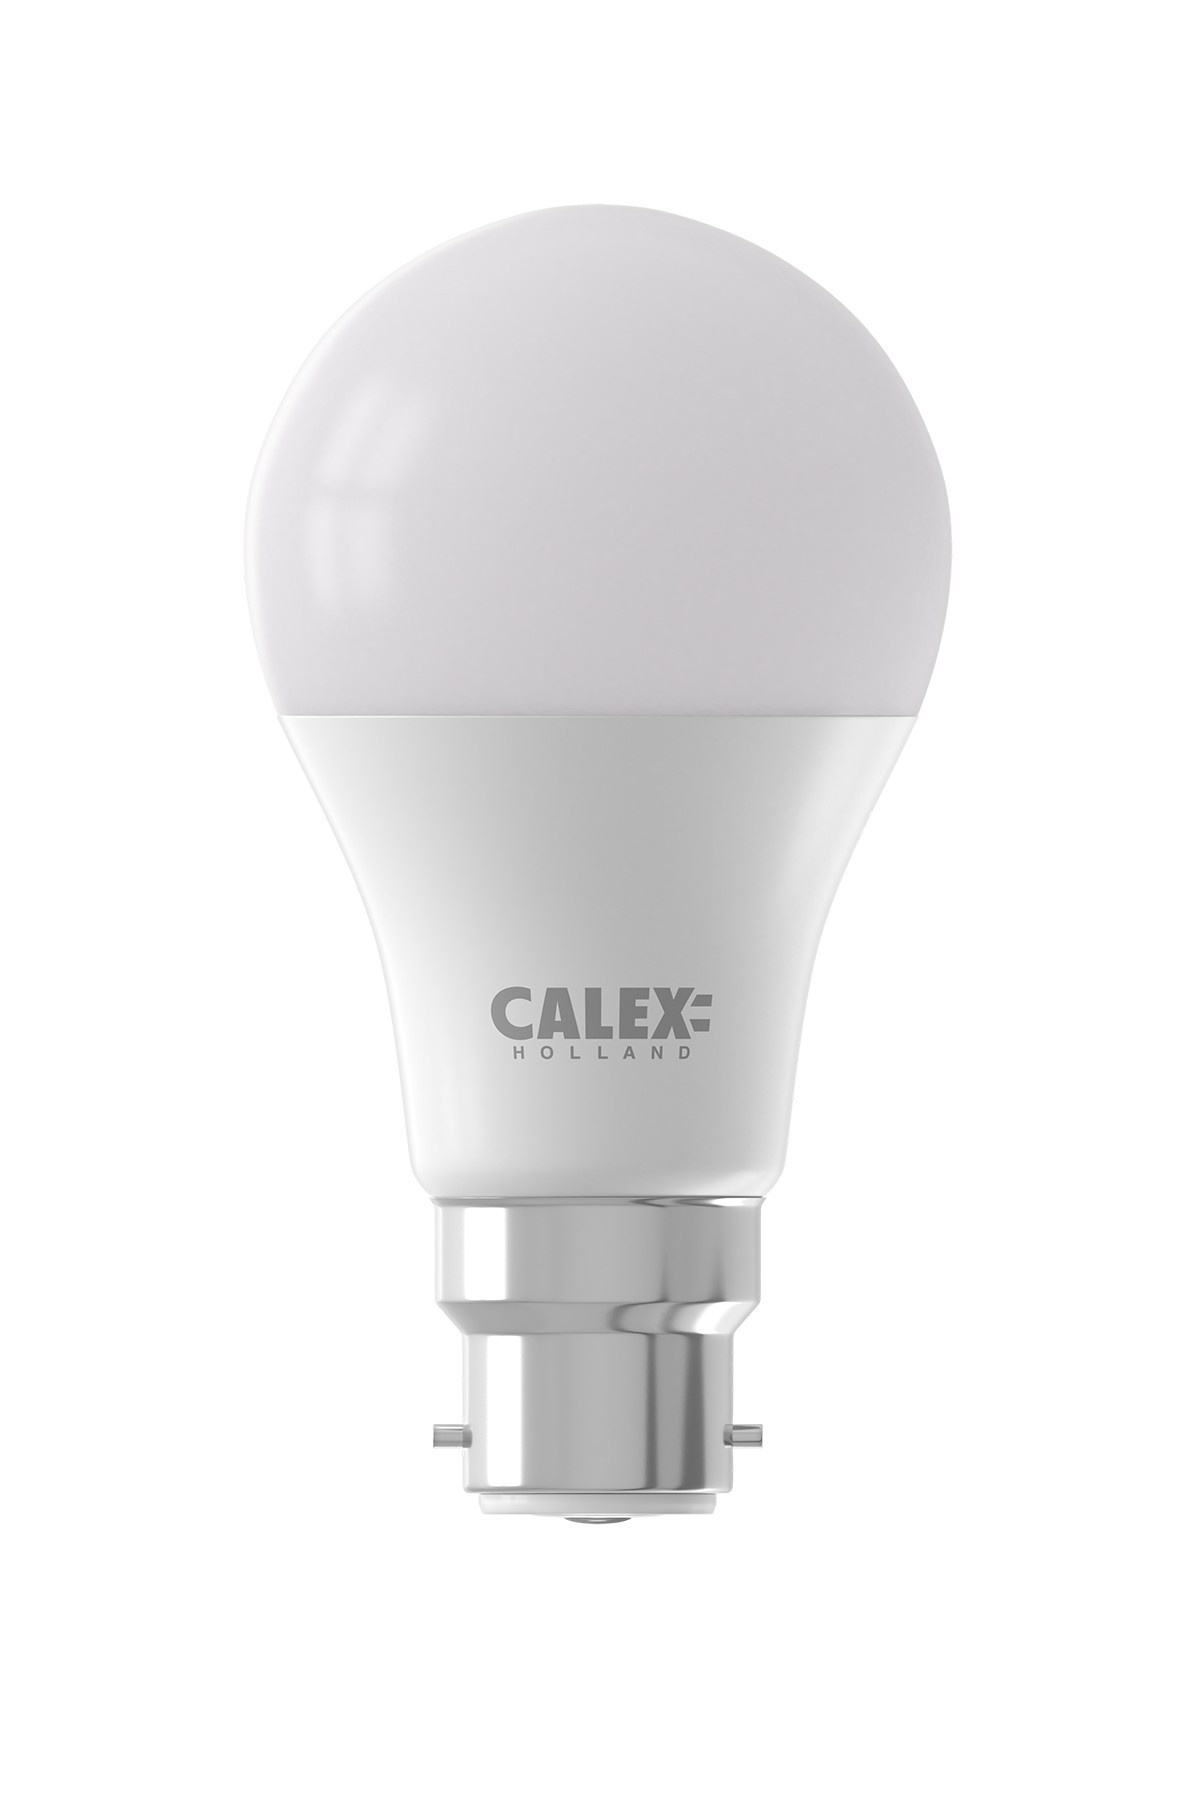 Calex Ampoule Connectée Ampoule LED Standard - B22 - 9W - 806 Lumen - 2200K  - 4000K - Lampe Vintage